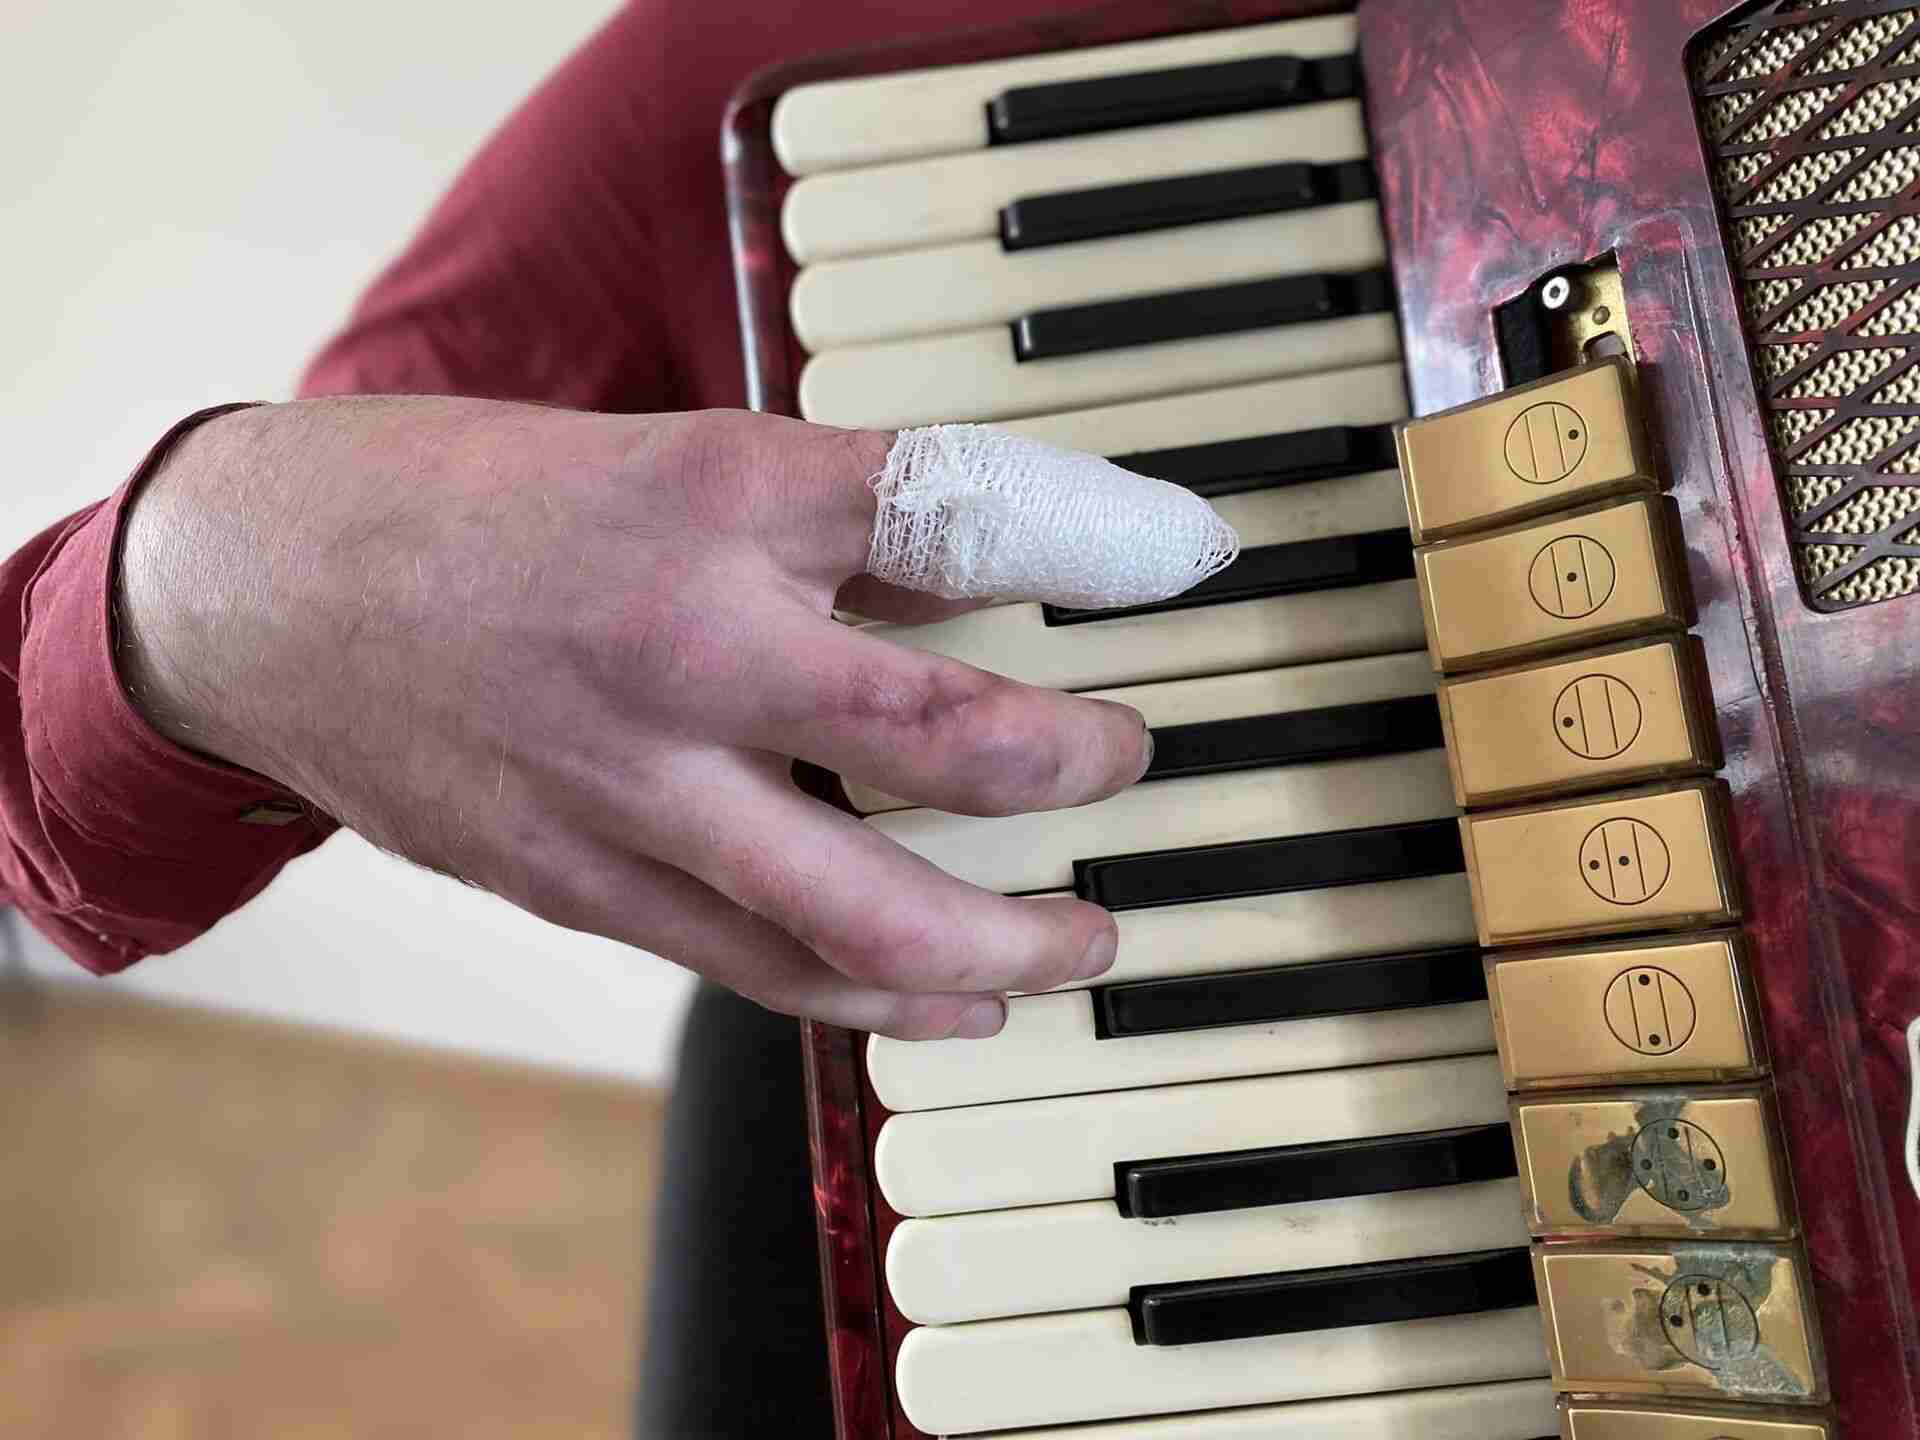 Врятований маестро: львівські хірурги врятували пальці руки молодого вчителя музики (ФОТО)